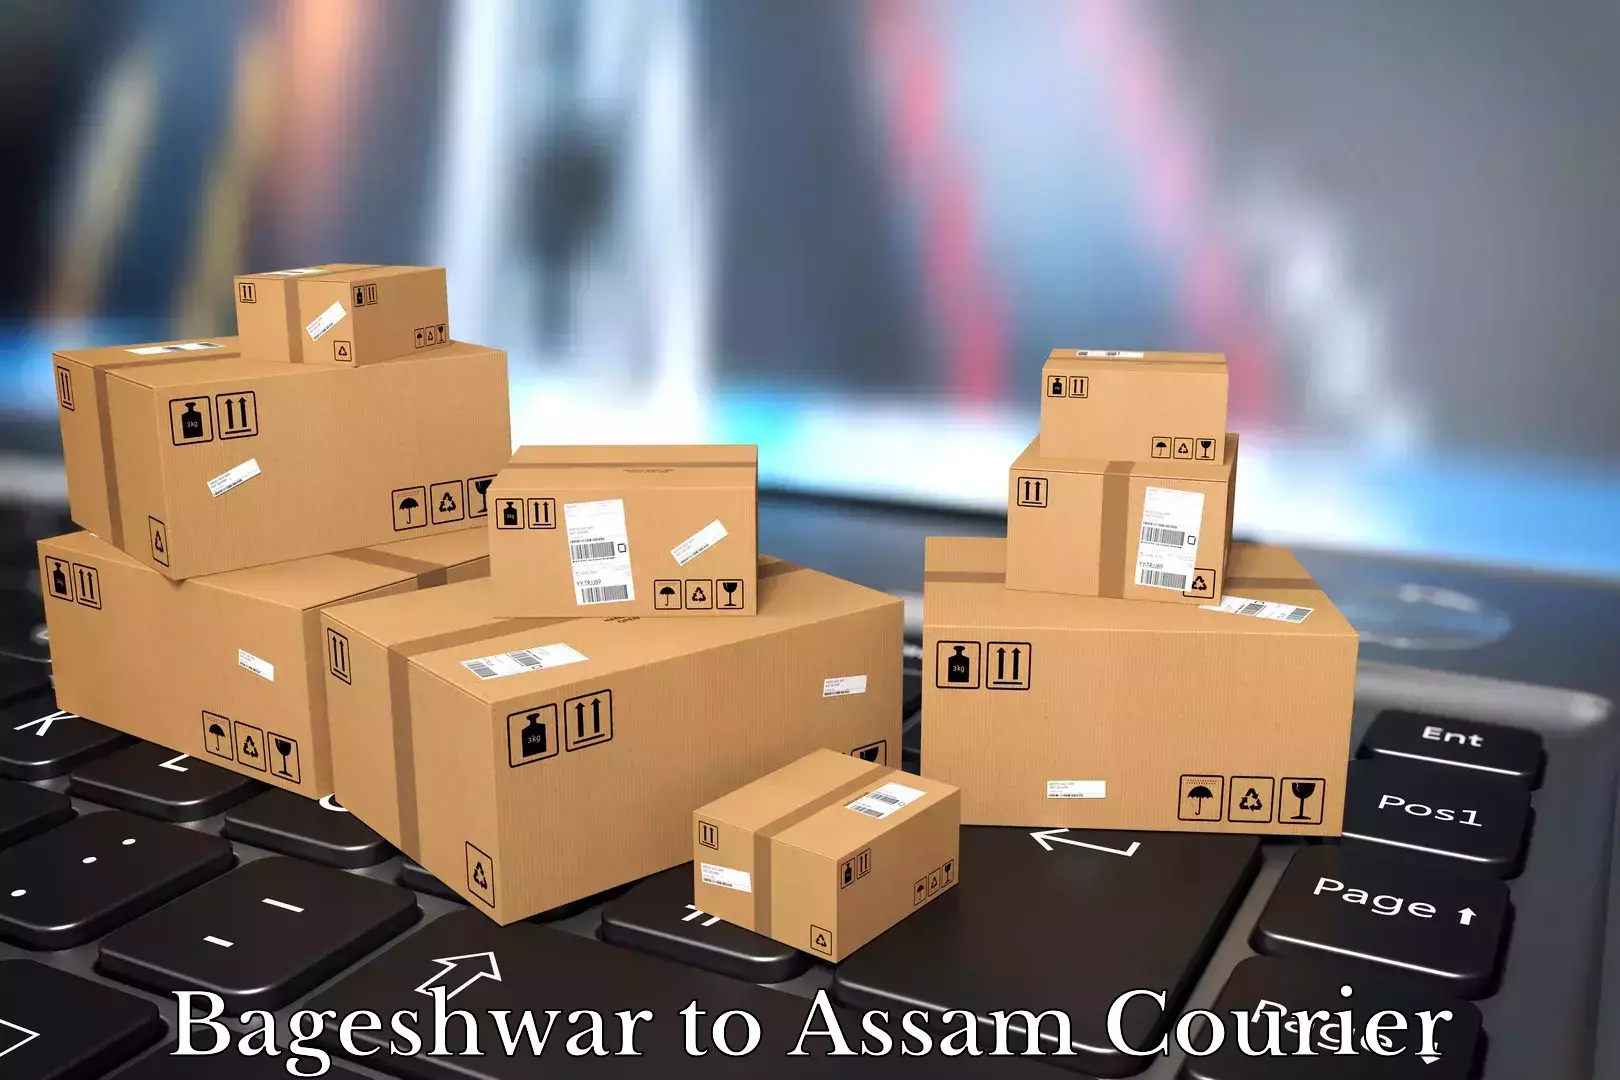 Furniture delivery service Bageshwar to Karimganj